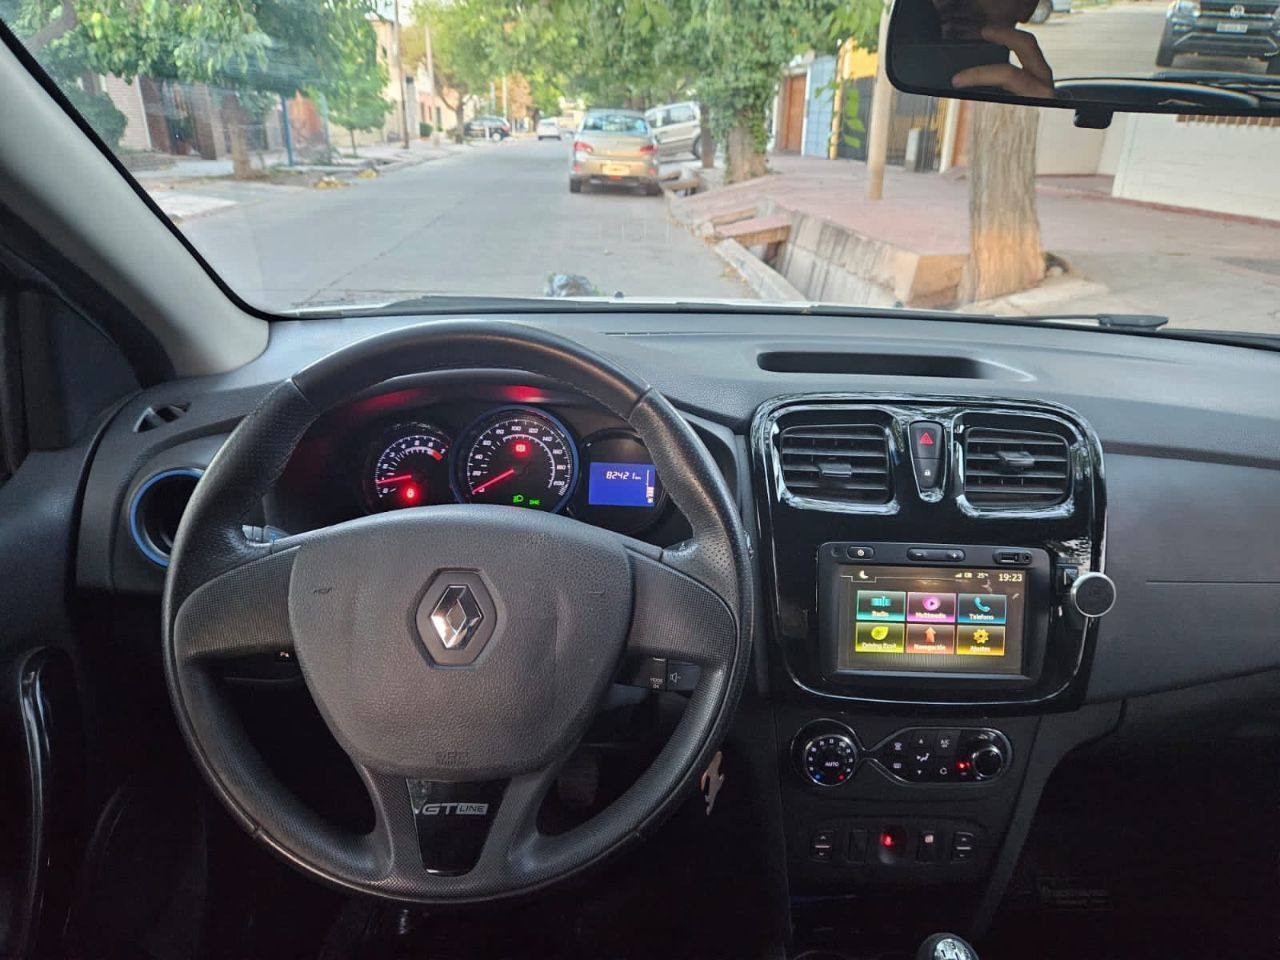 Renault Sandero Usado en Mendoza, deRuedas